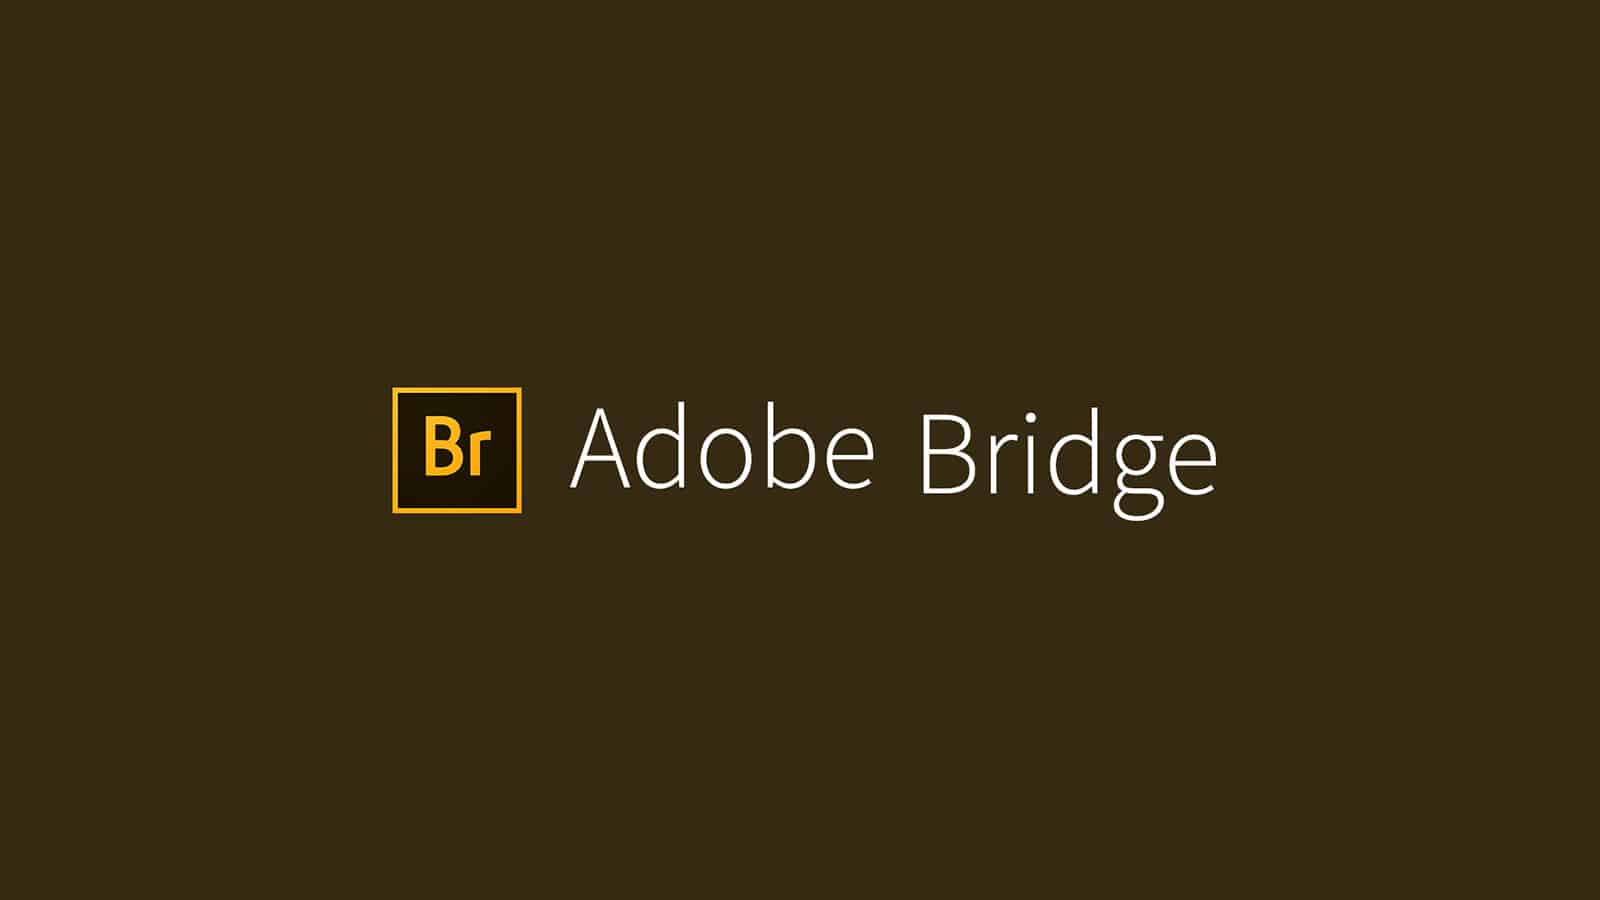 What is Adobe Bridge